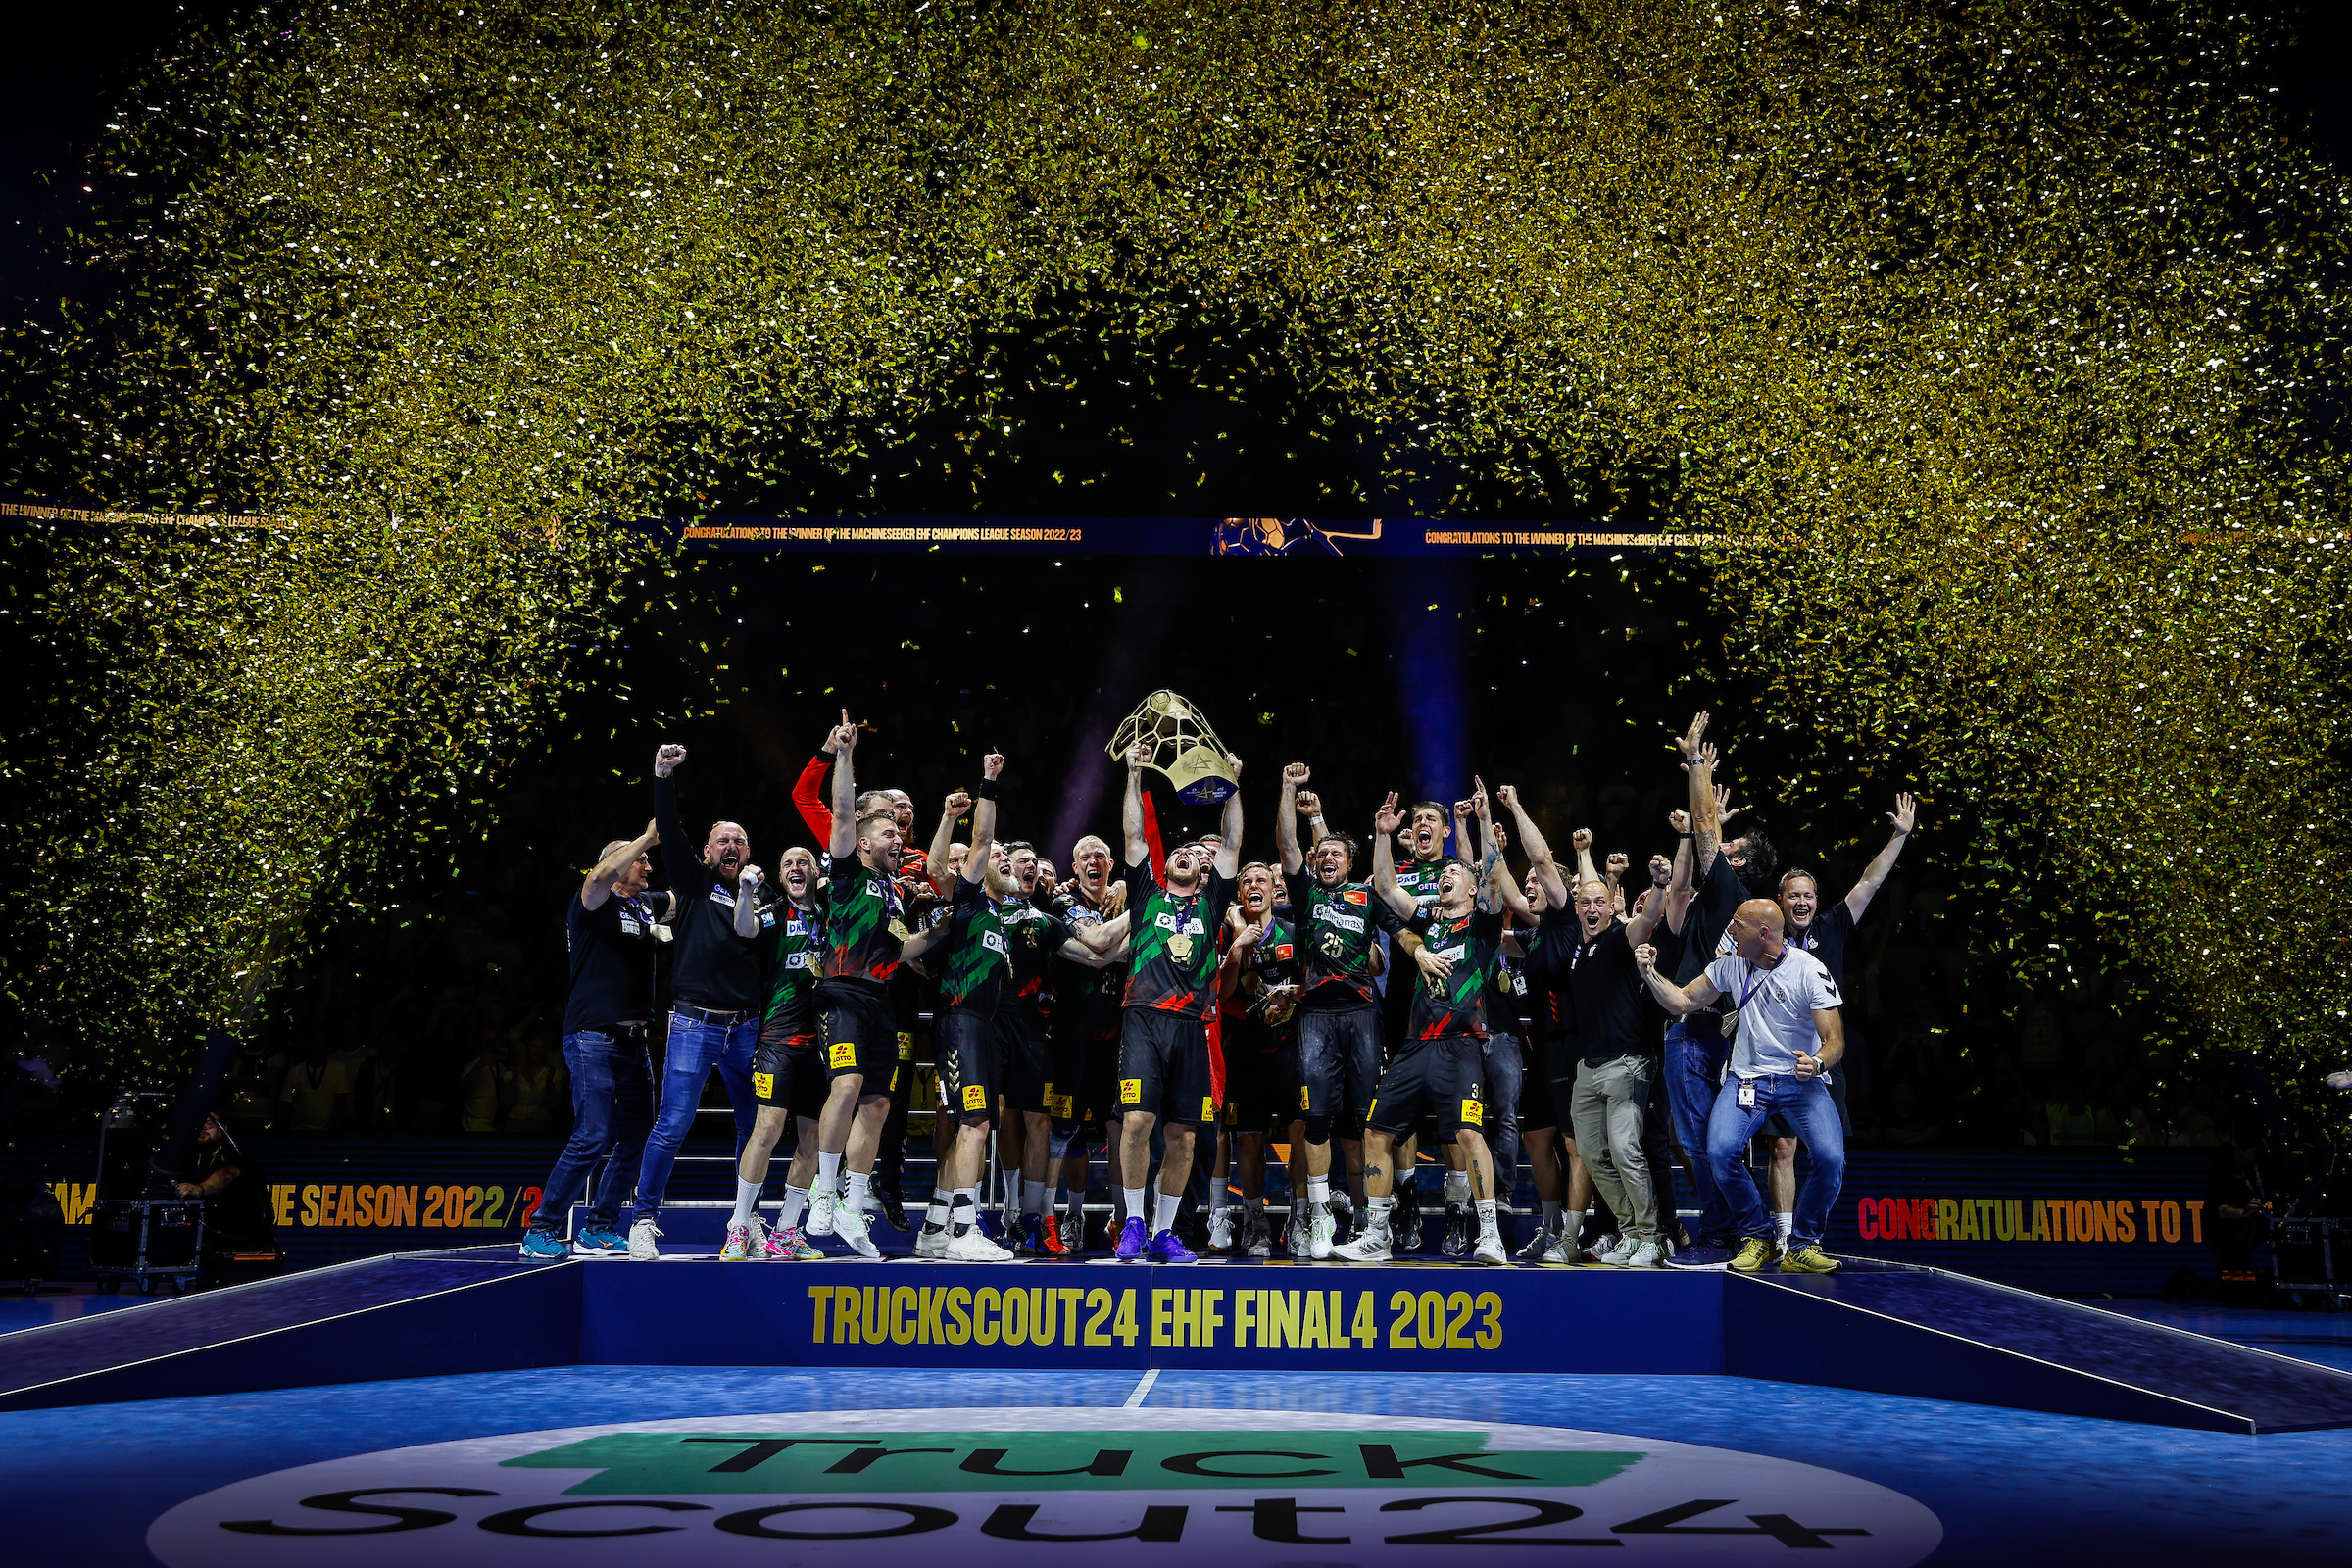 eab solar freut sich gemeinsam mit den Handballern vom SCM über den Gewinn der Deutschen Meisterschaft.